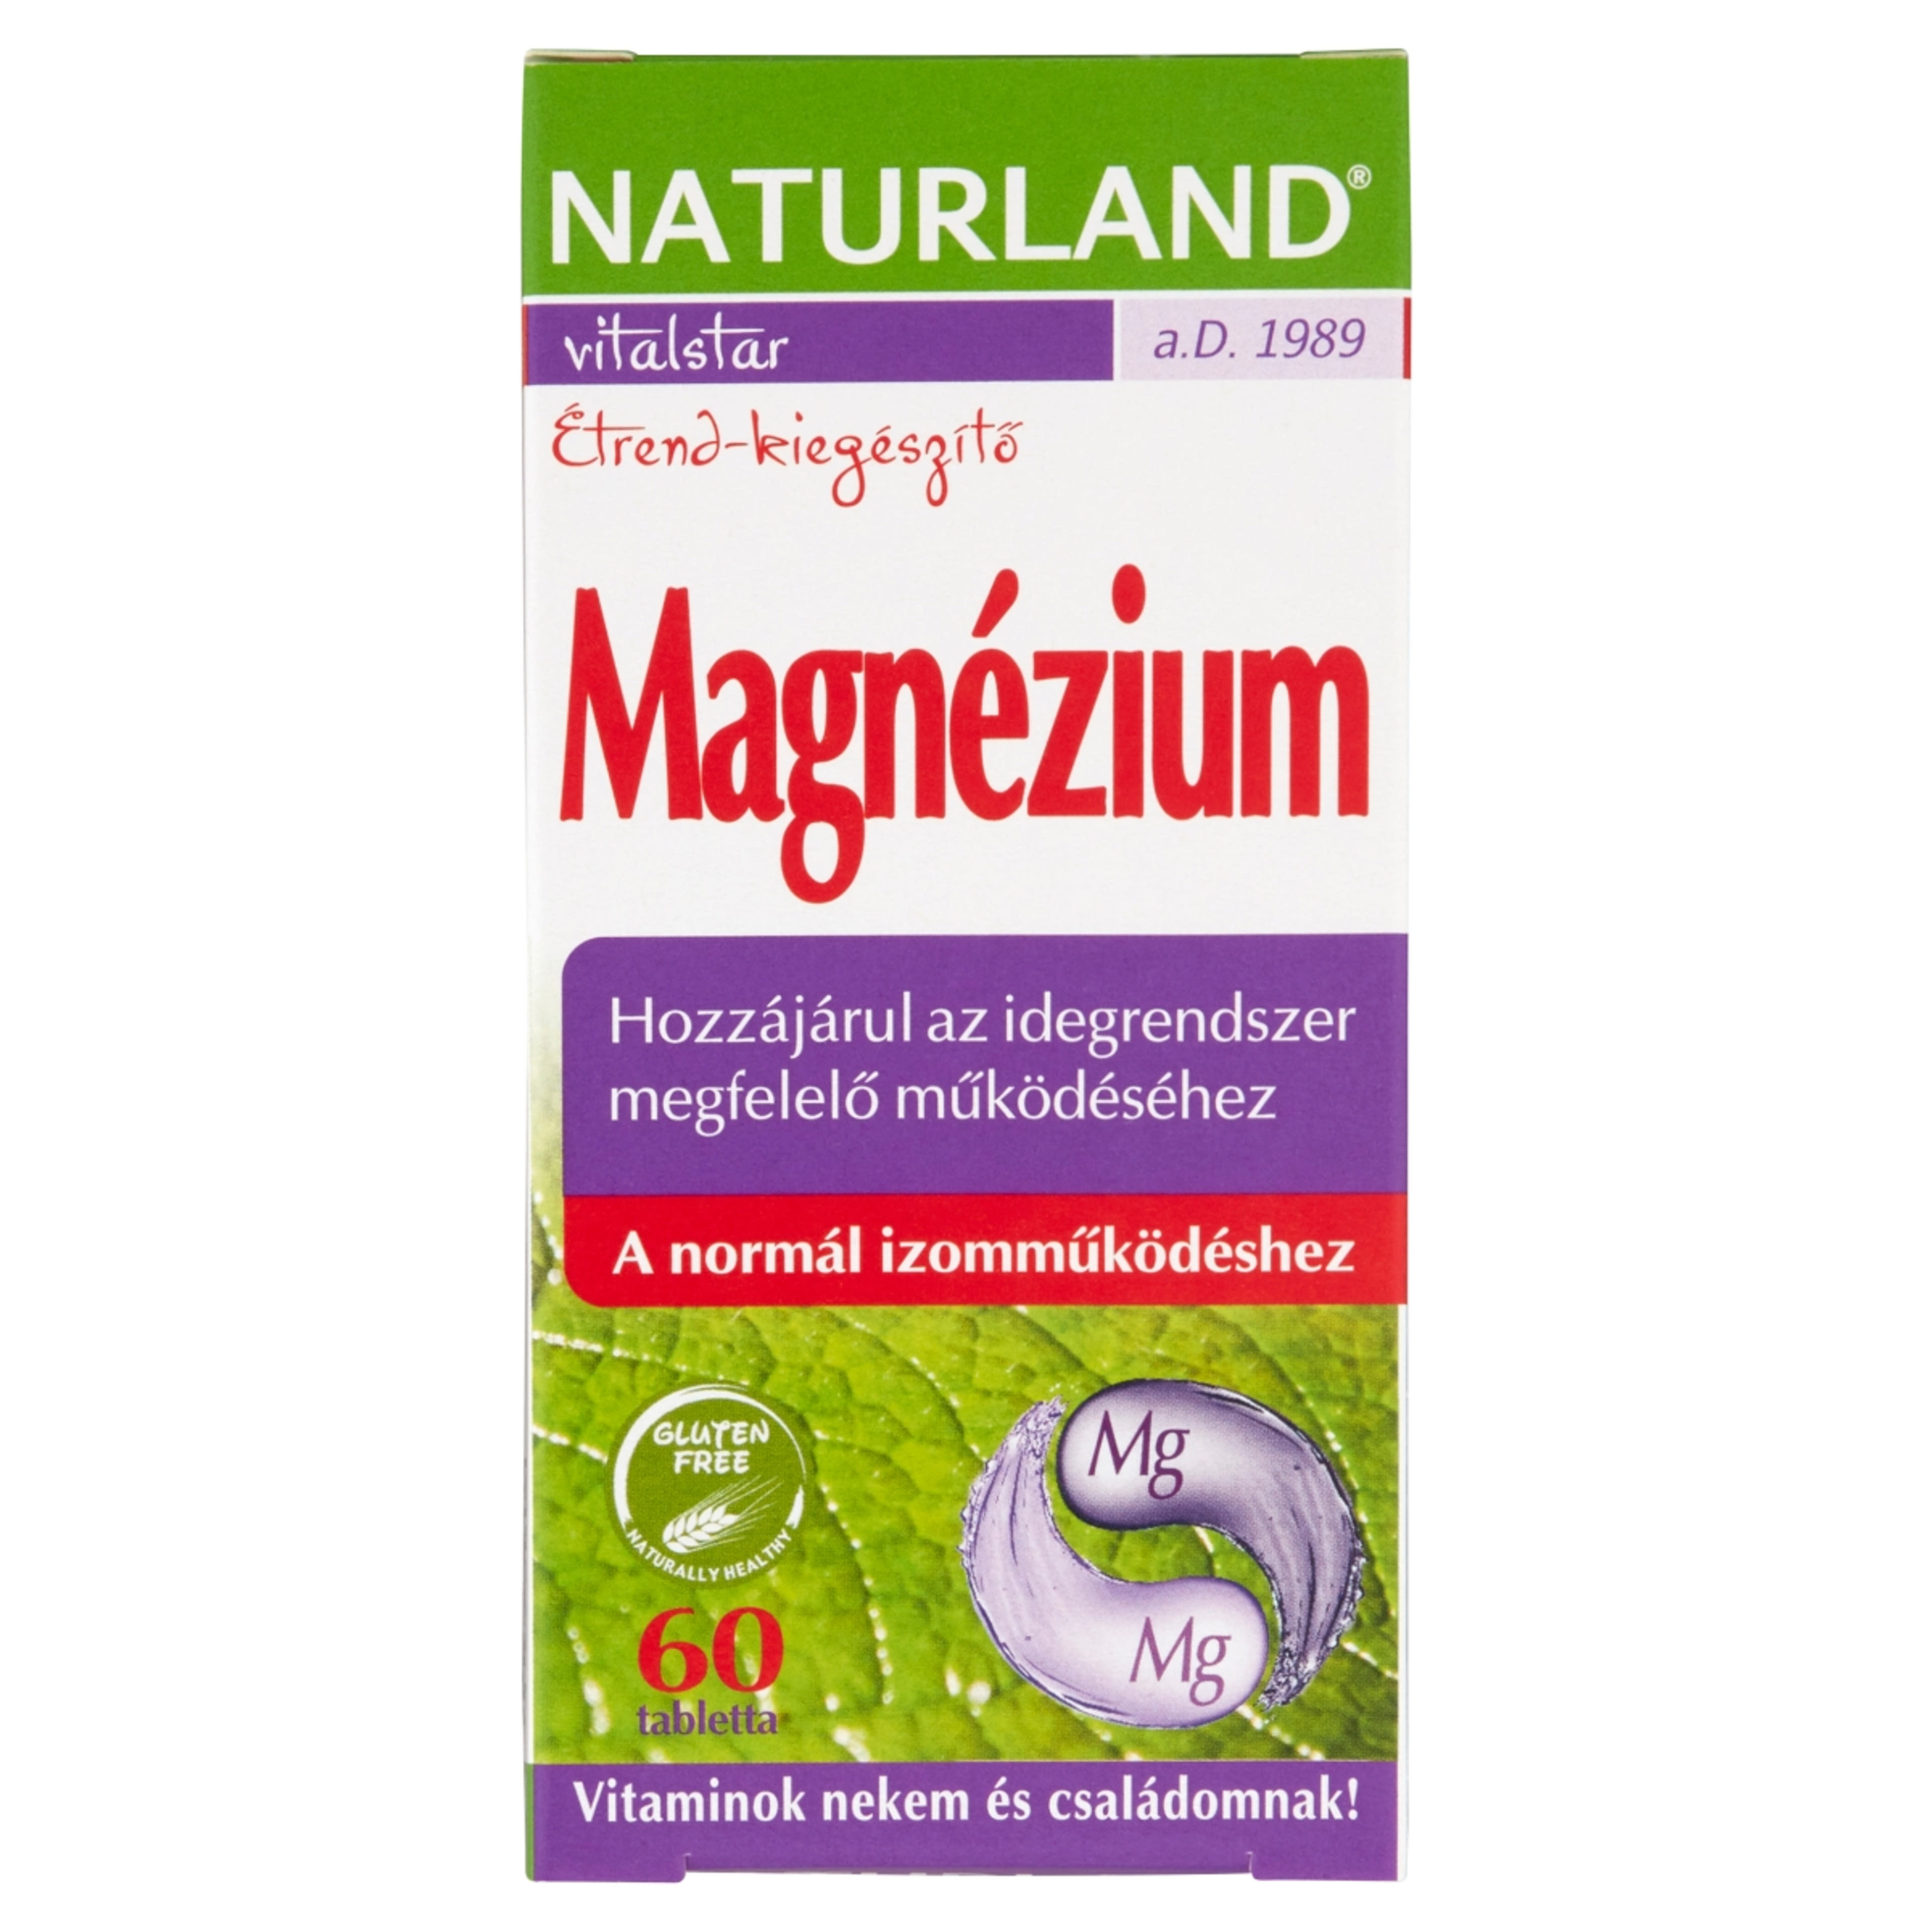 Naturland Magnézium Tabletta - 60 db